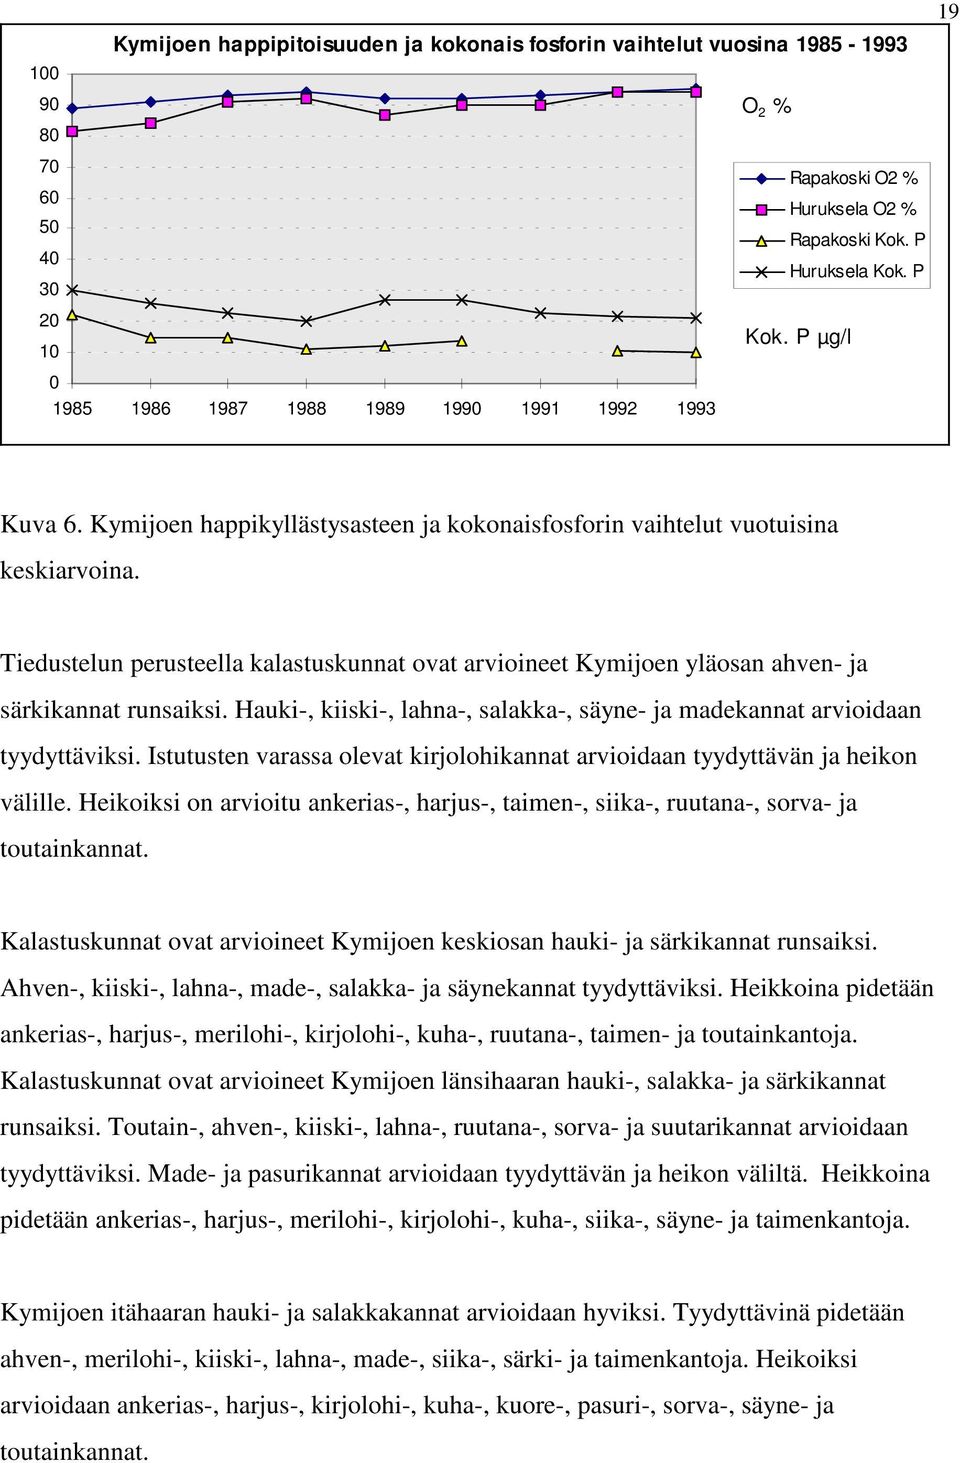 Tiedustelun perusteella kalastuskunnat ovat arvioineet Kymijoen yläosan ahven- ja särkikannat runsaiksi. Hauki-, kiiski-, lahna-, salakka-, säyne- ja madekannat arvioidaan tyydyttäviksi.